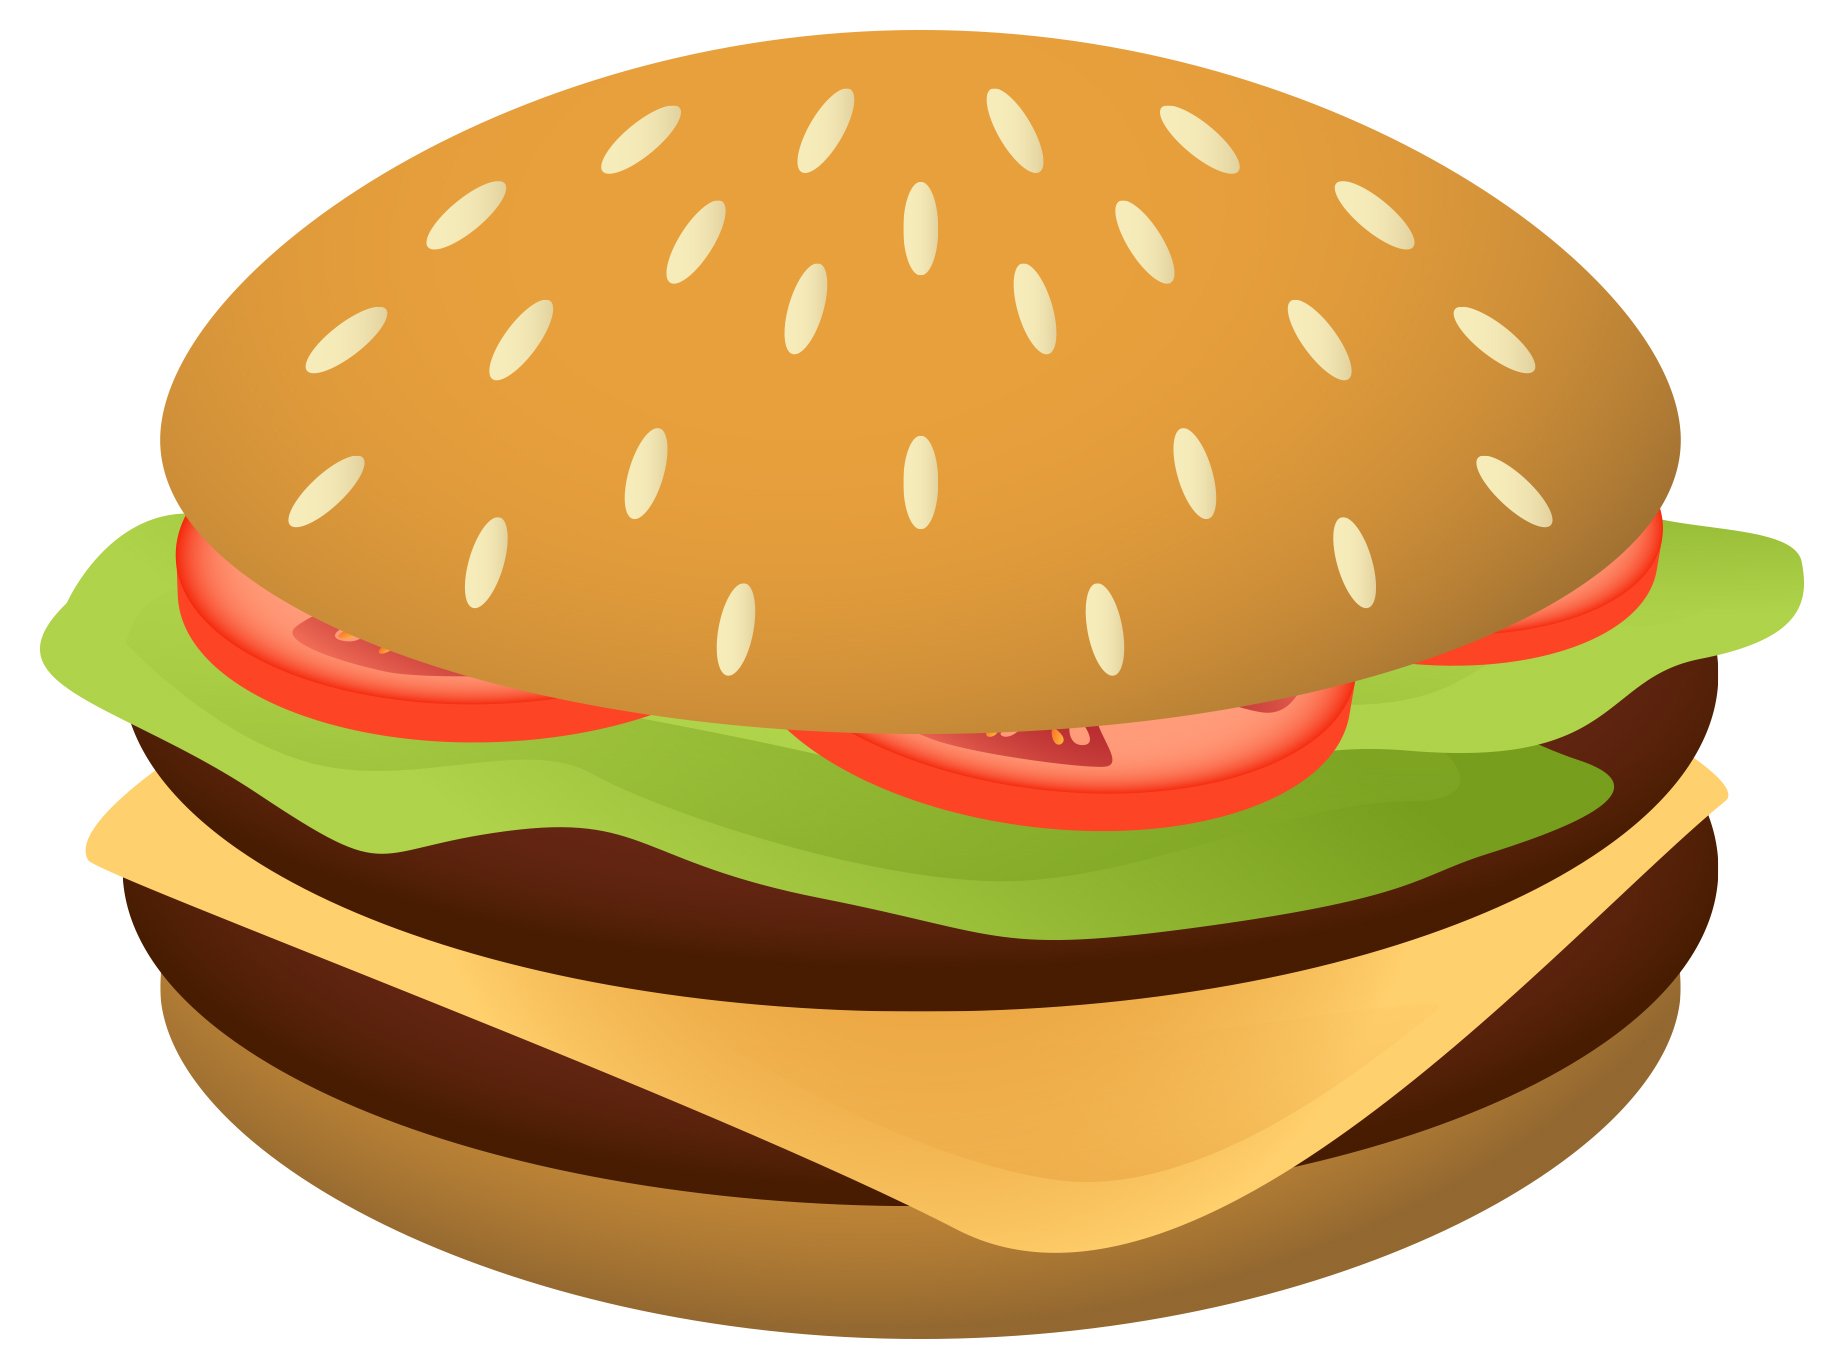 Hamburger PNG Vector Clipart